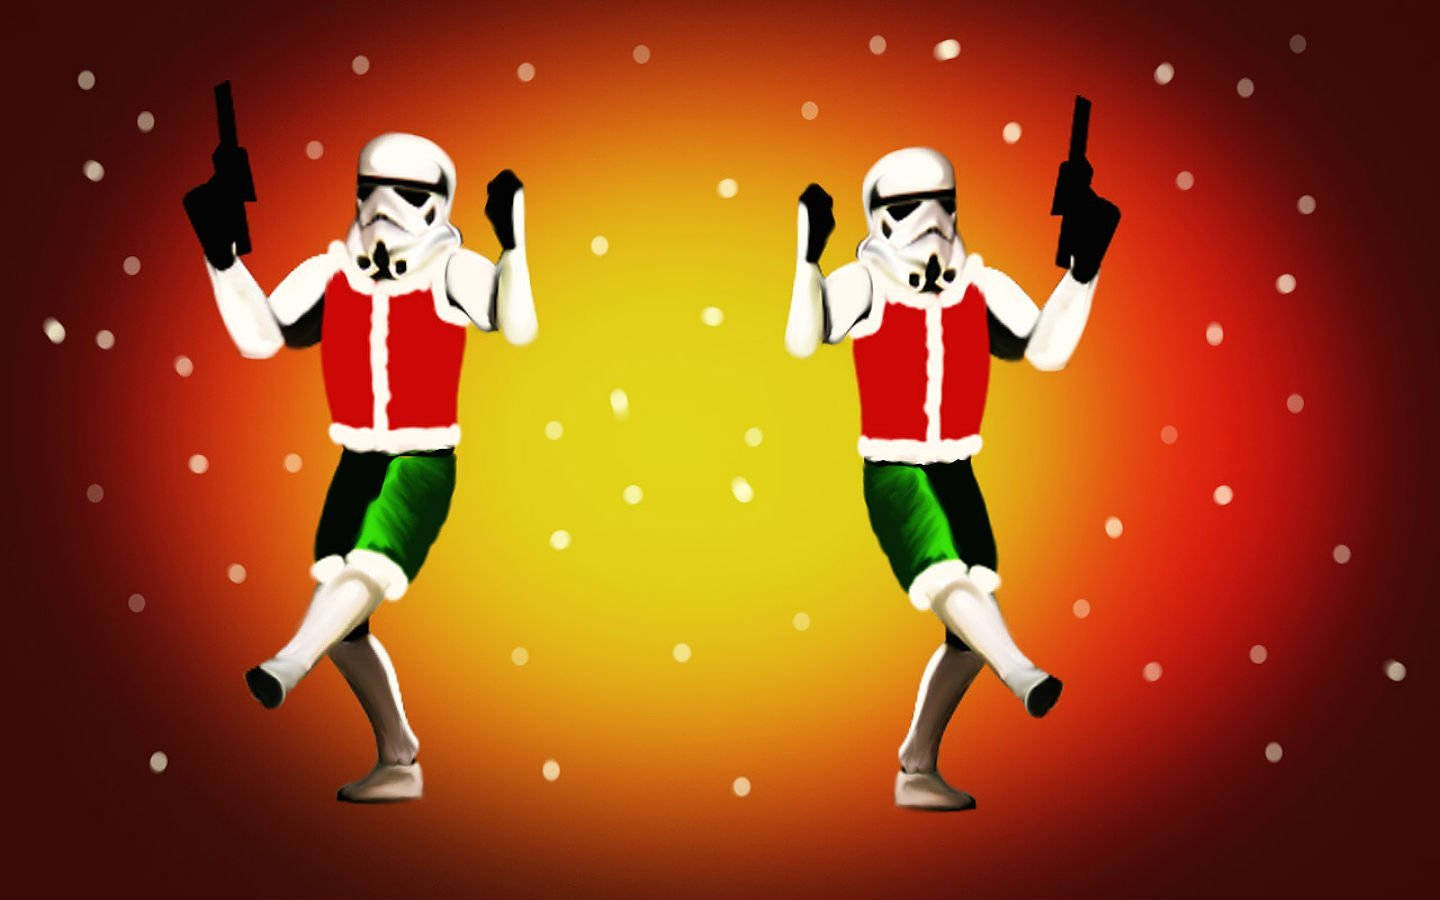 Tauchensie Ein In Die Festliche Stimmung Und Feiern Sie Weihnachten Mit Den Charakteren Aus Star Wars! Wallpaper